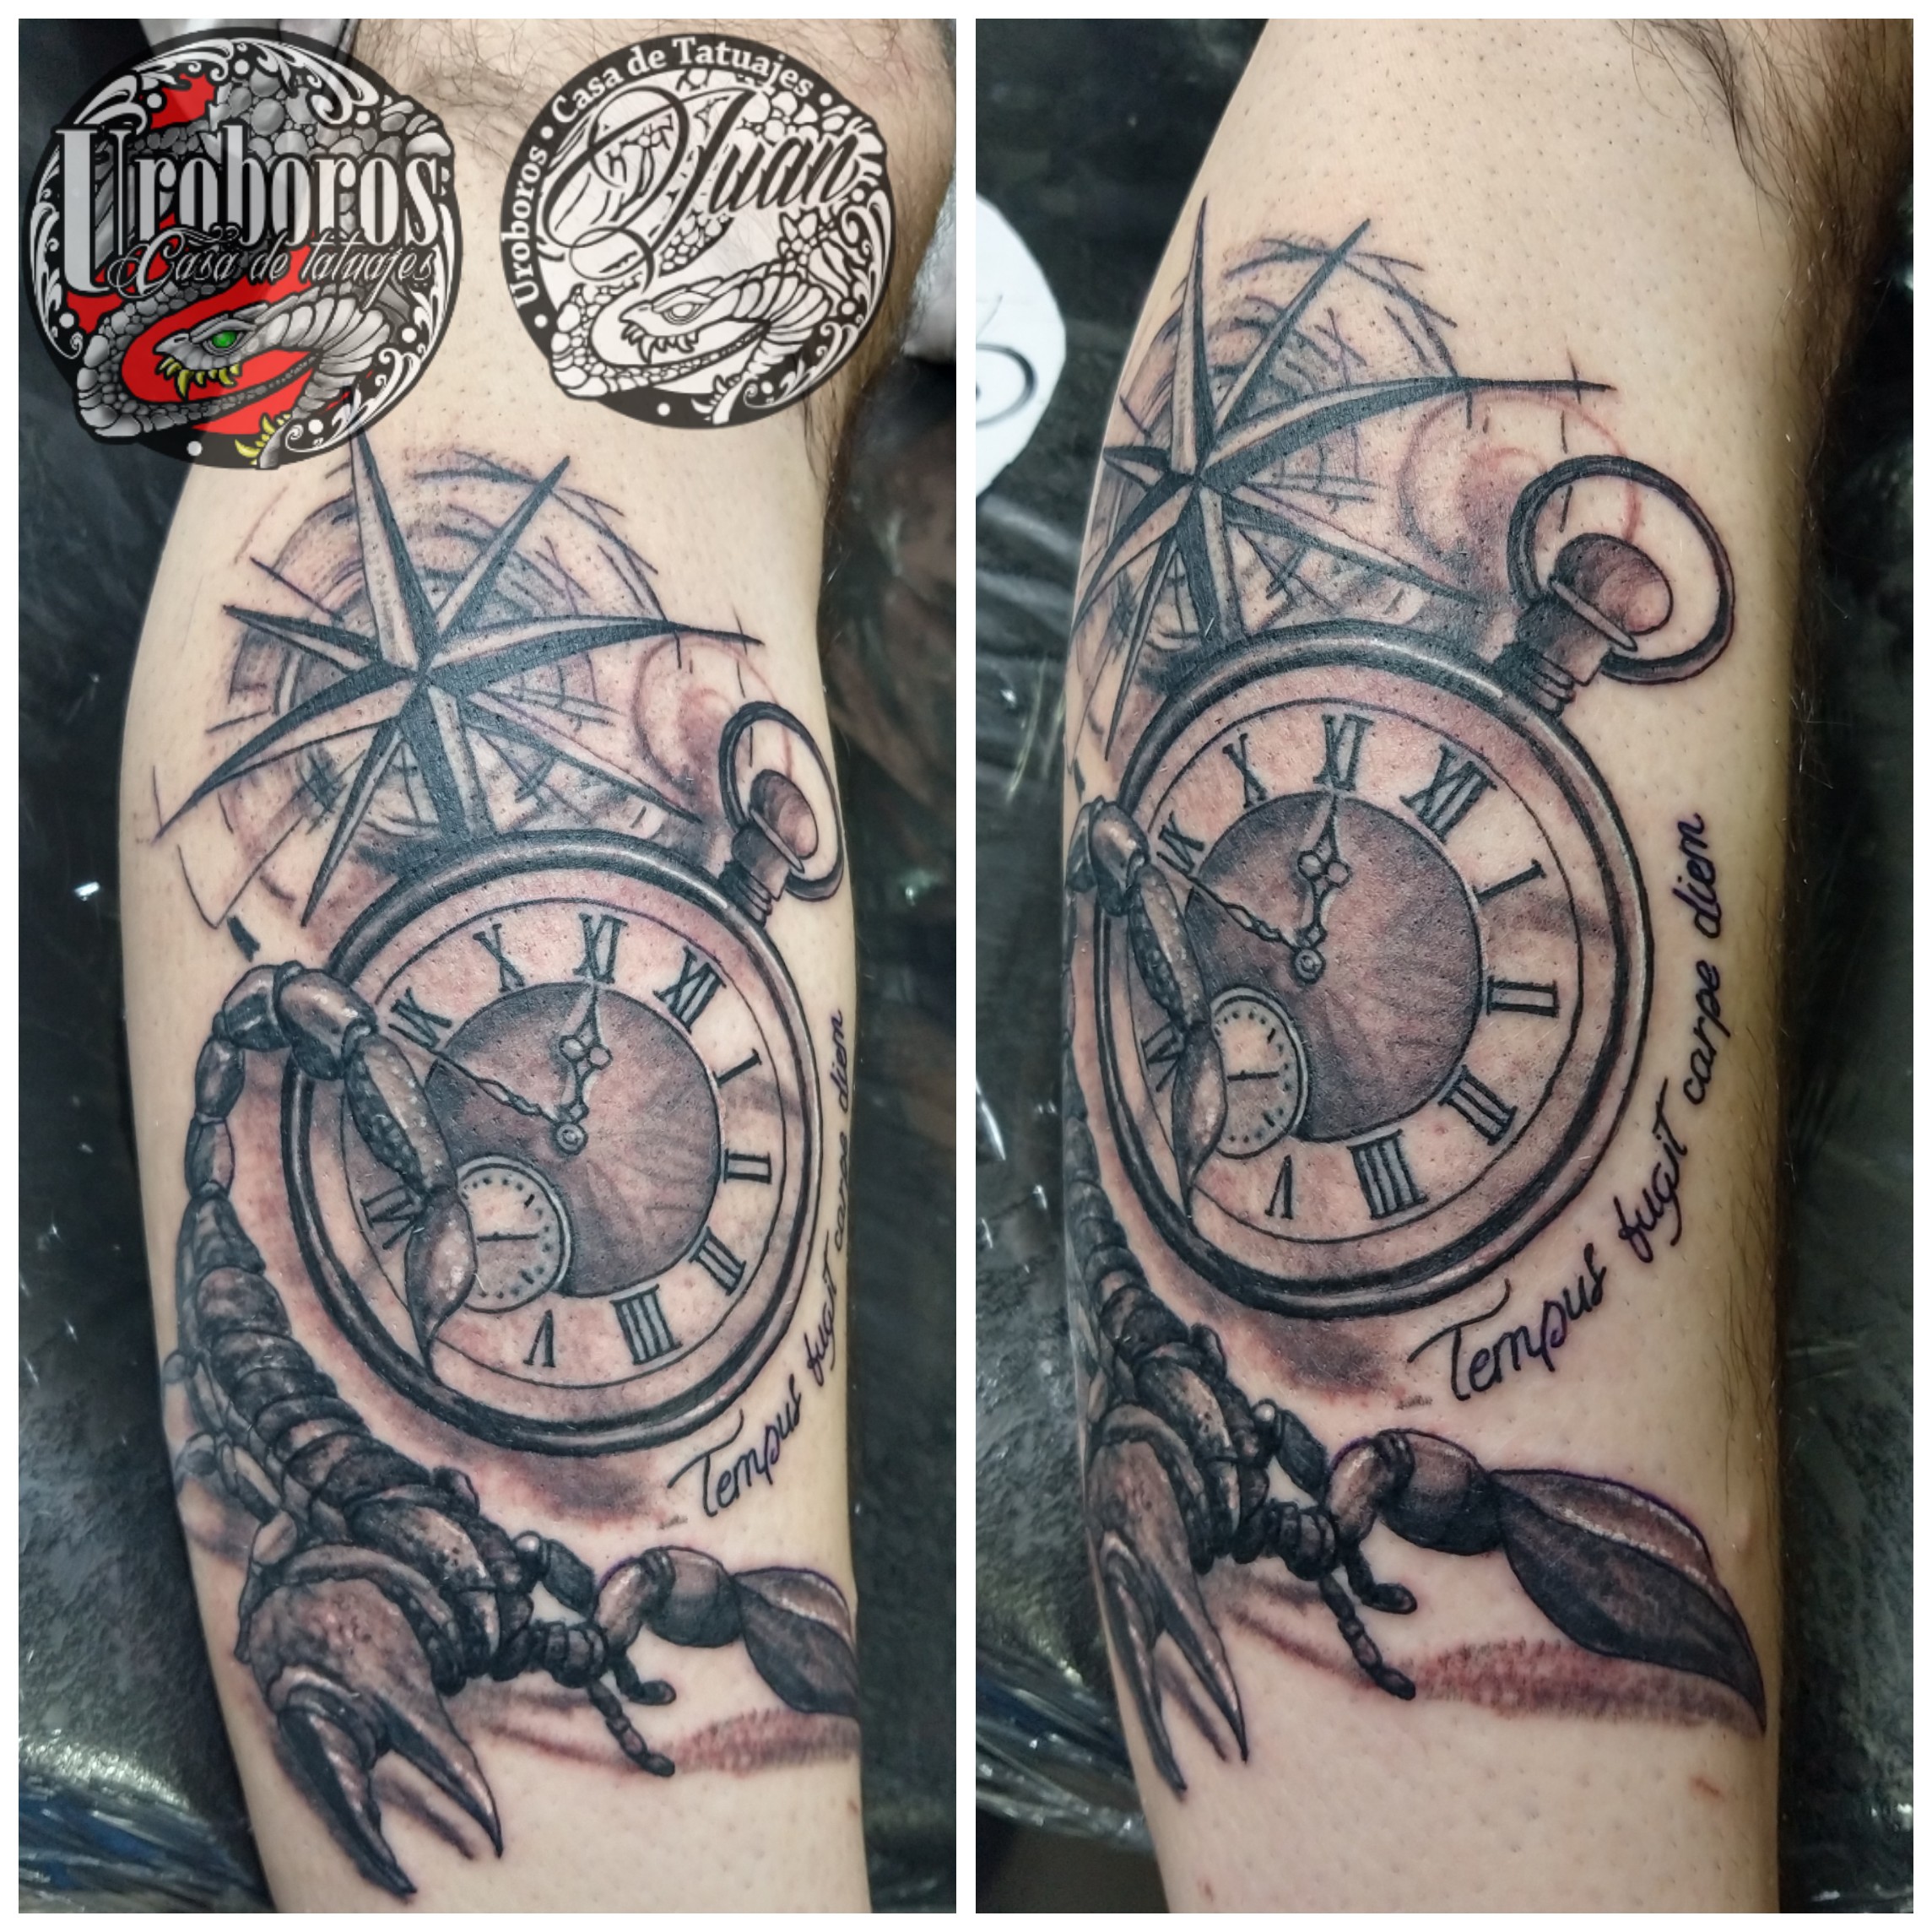 Tatuaje Reloj Escorpion Image By Juan Uroboros